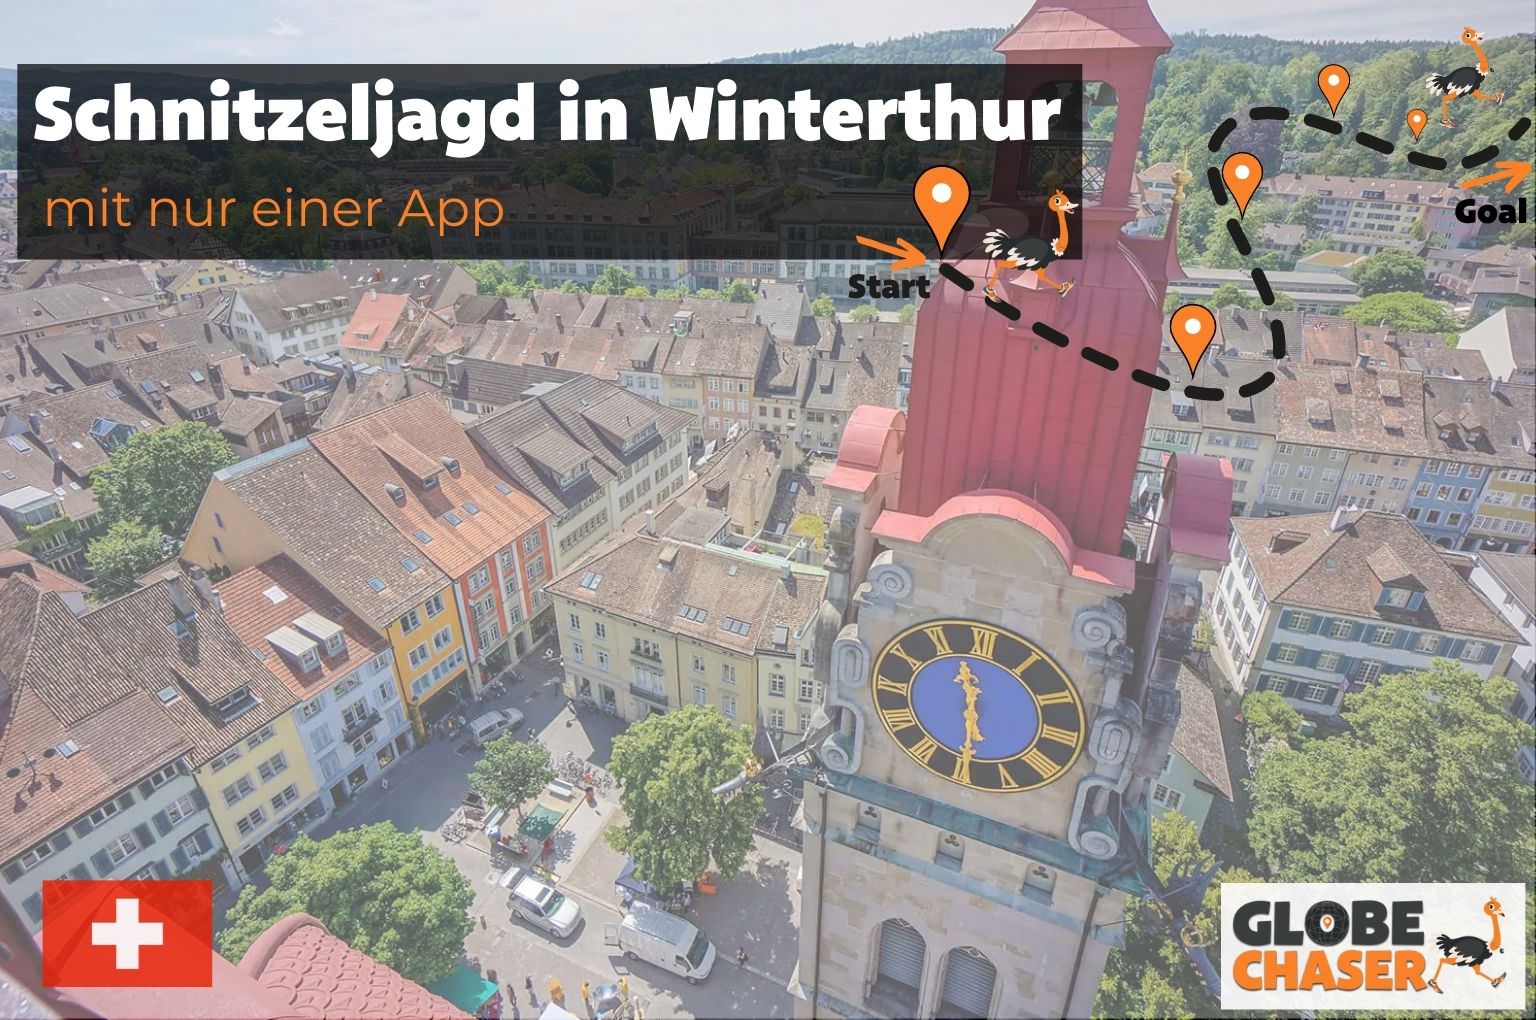 Schnitzeljagd in Winterthur mit App - Globe Chaser Erlebnisse Schweiz